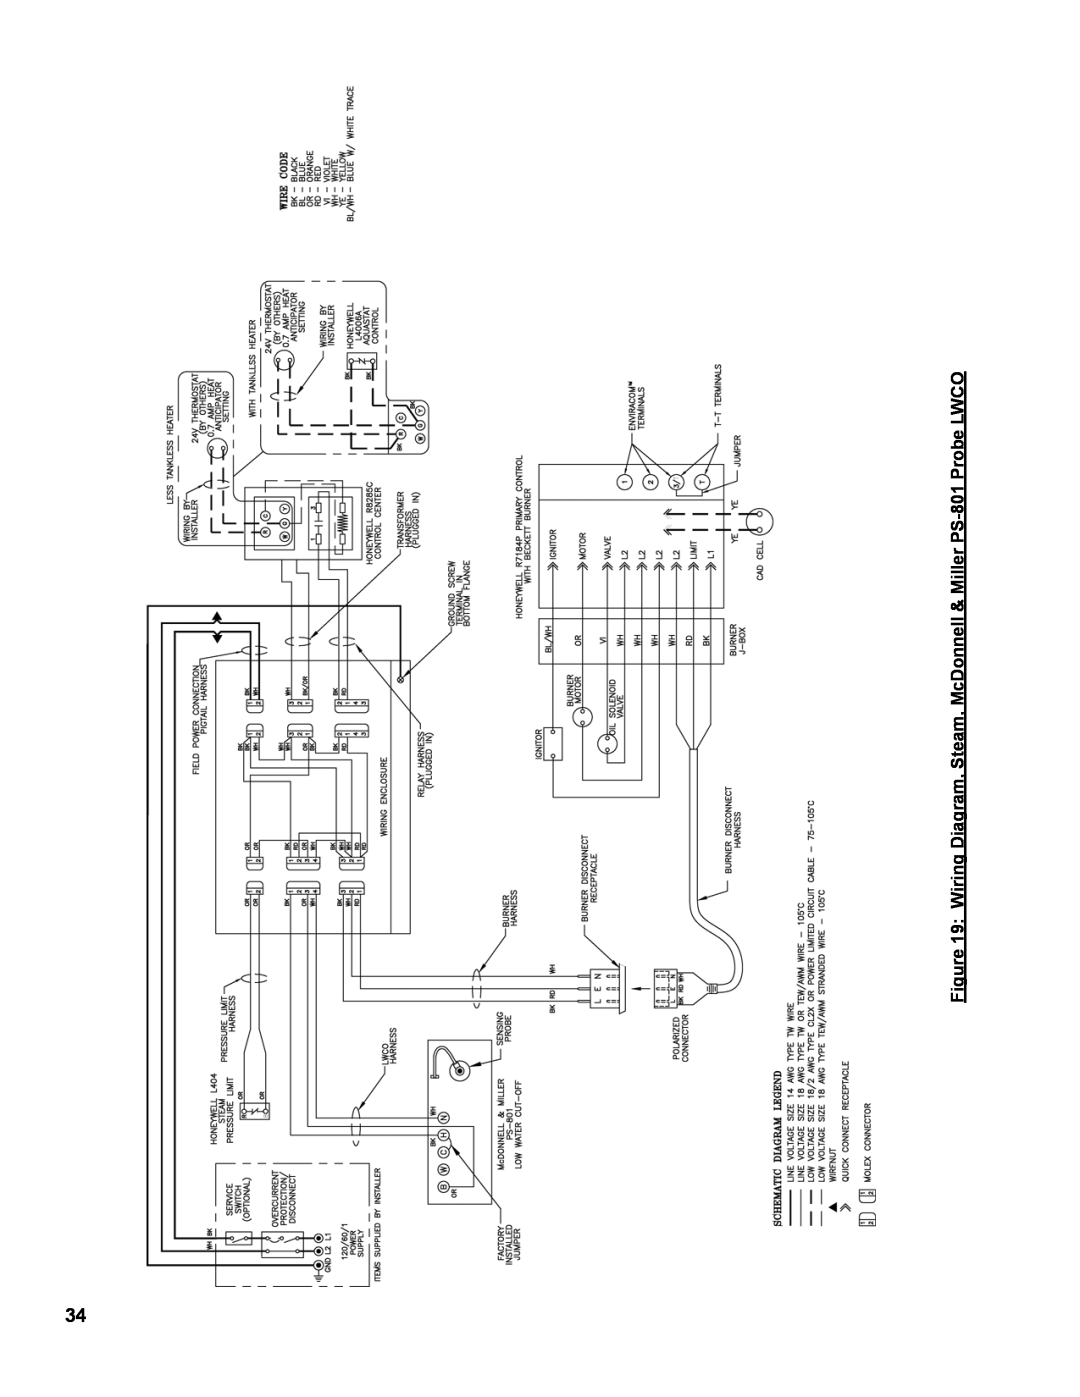 Burnham MST629, MST288, MST396, MST513 manual Wiring Diagram, Steam, McDonnell & Miller PS-801 Probe LWCO 